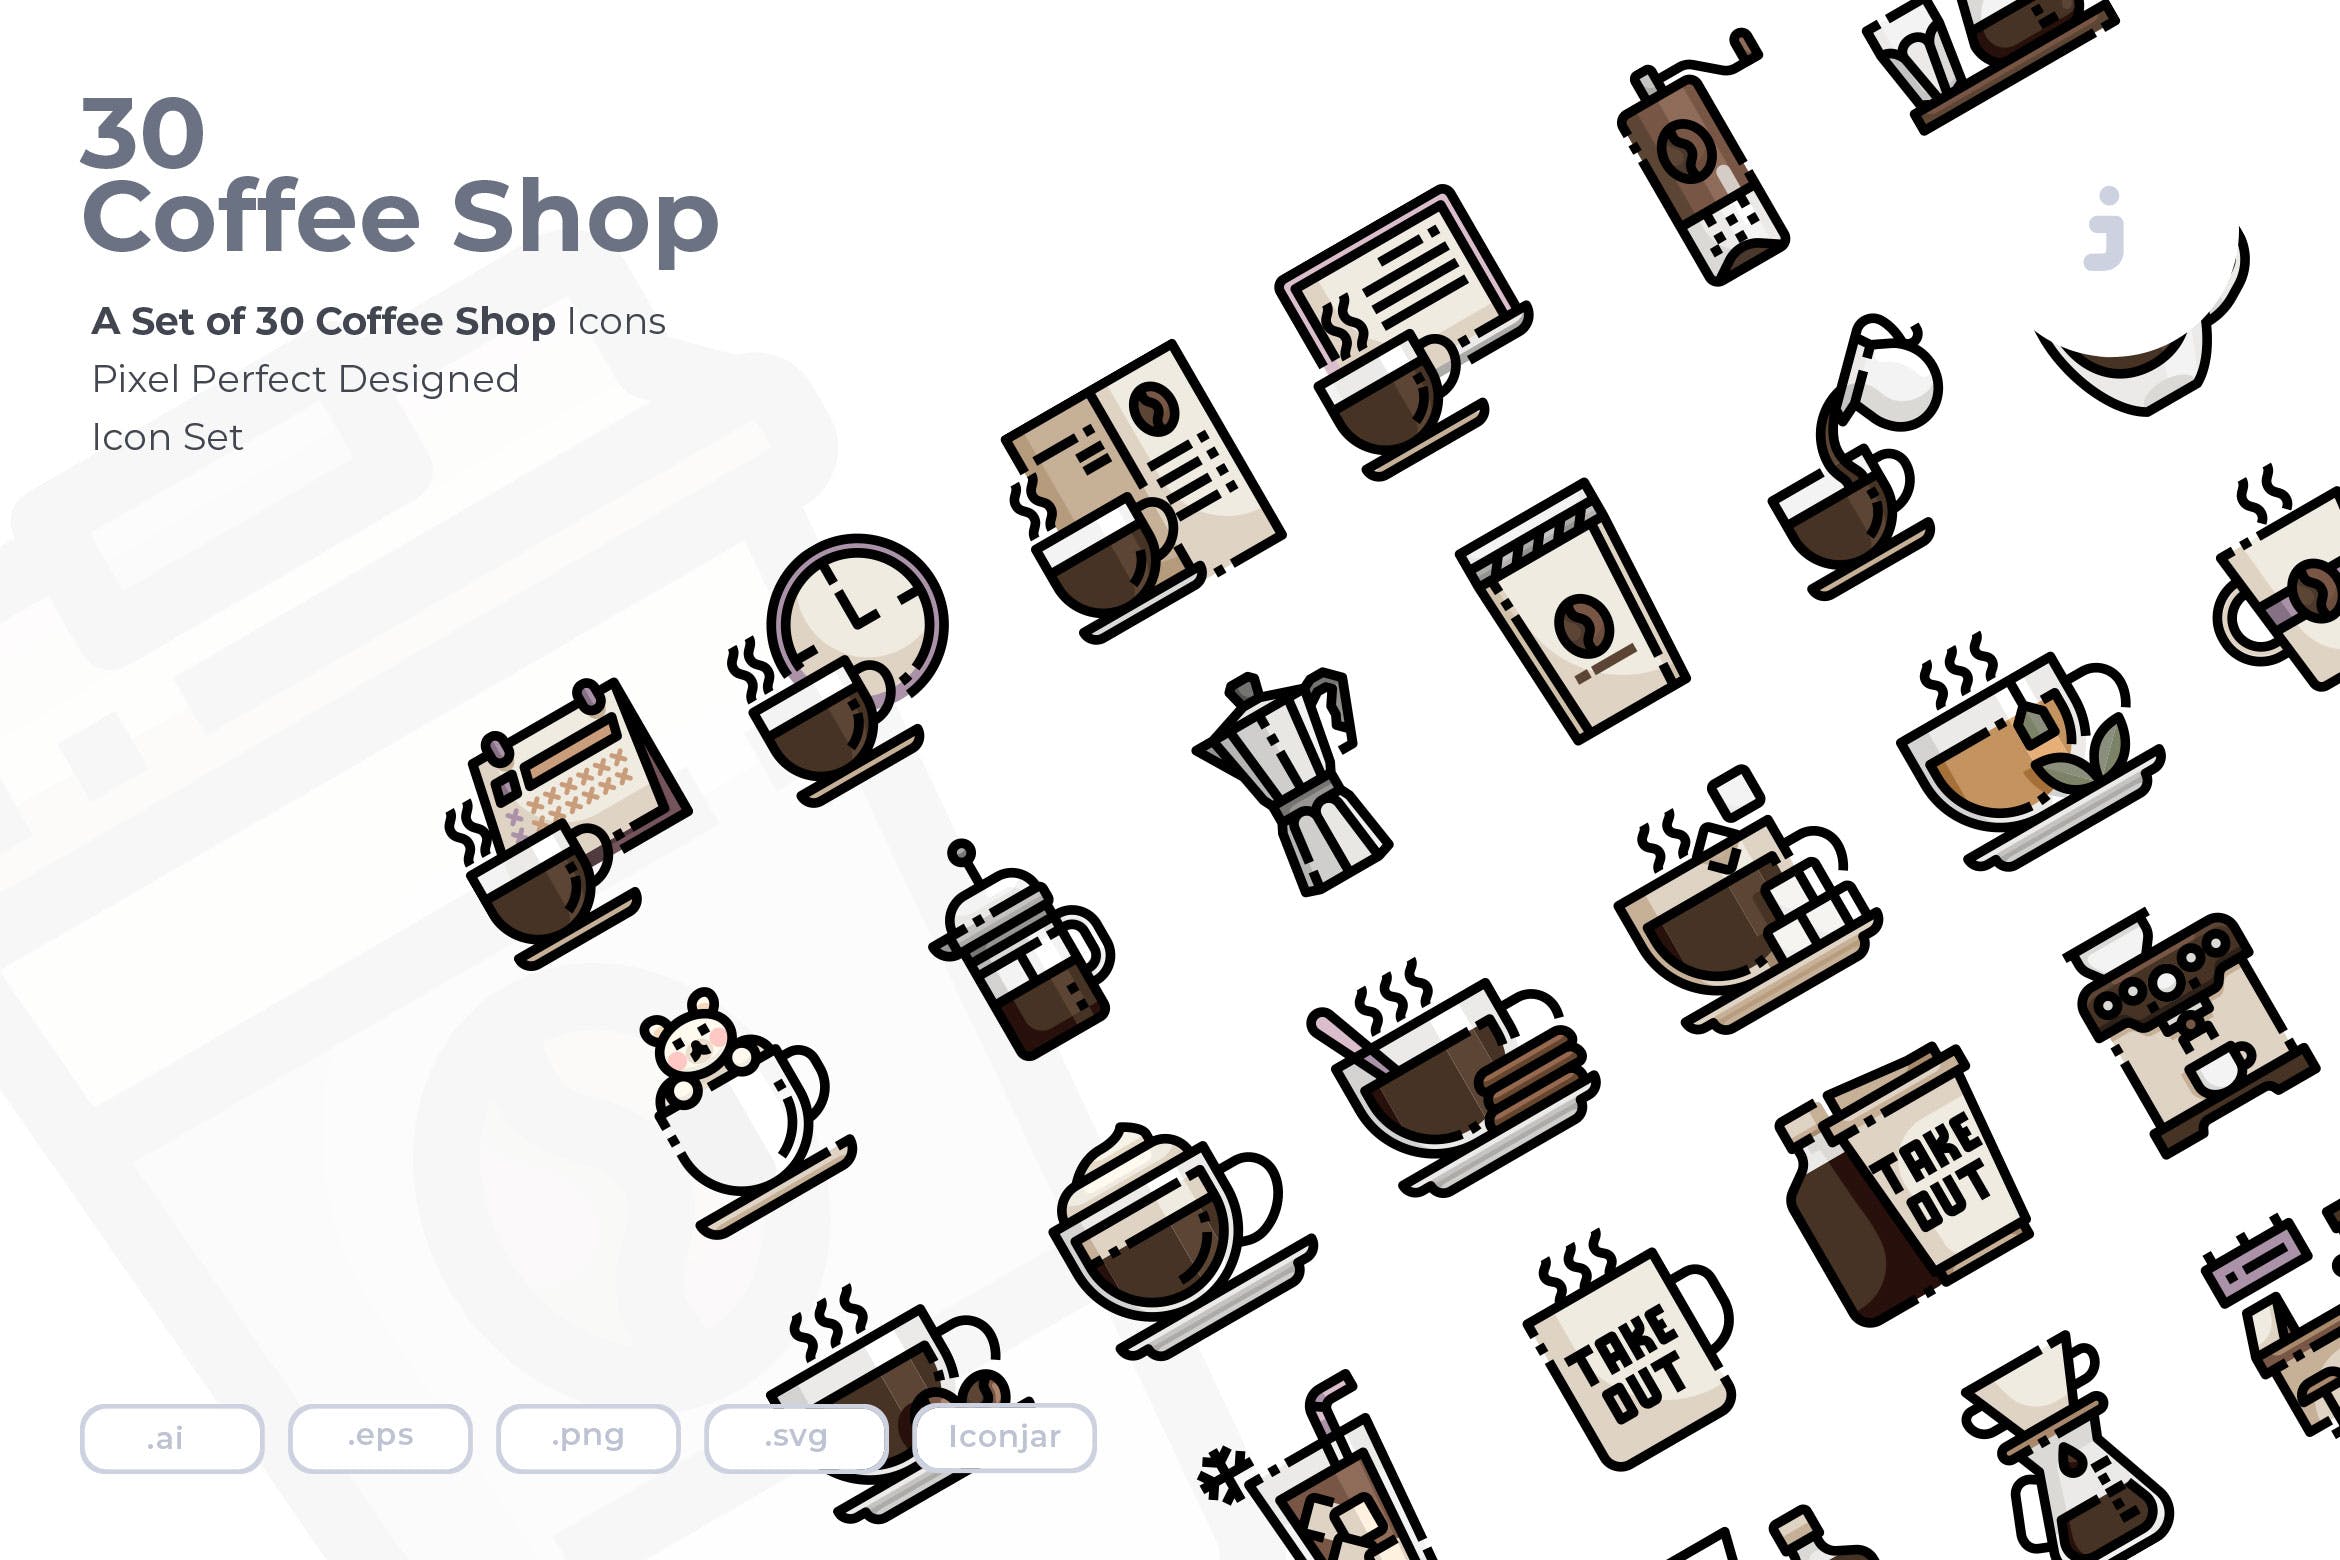 30枚咖啡/咖啡店矢量16设计素材网精选图标素材 30 Coffee Shop Icons插图